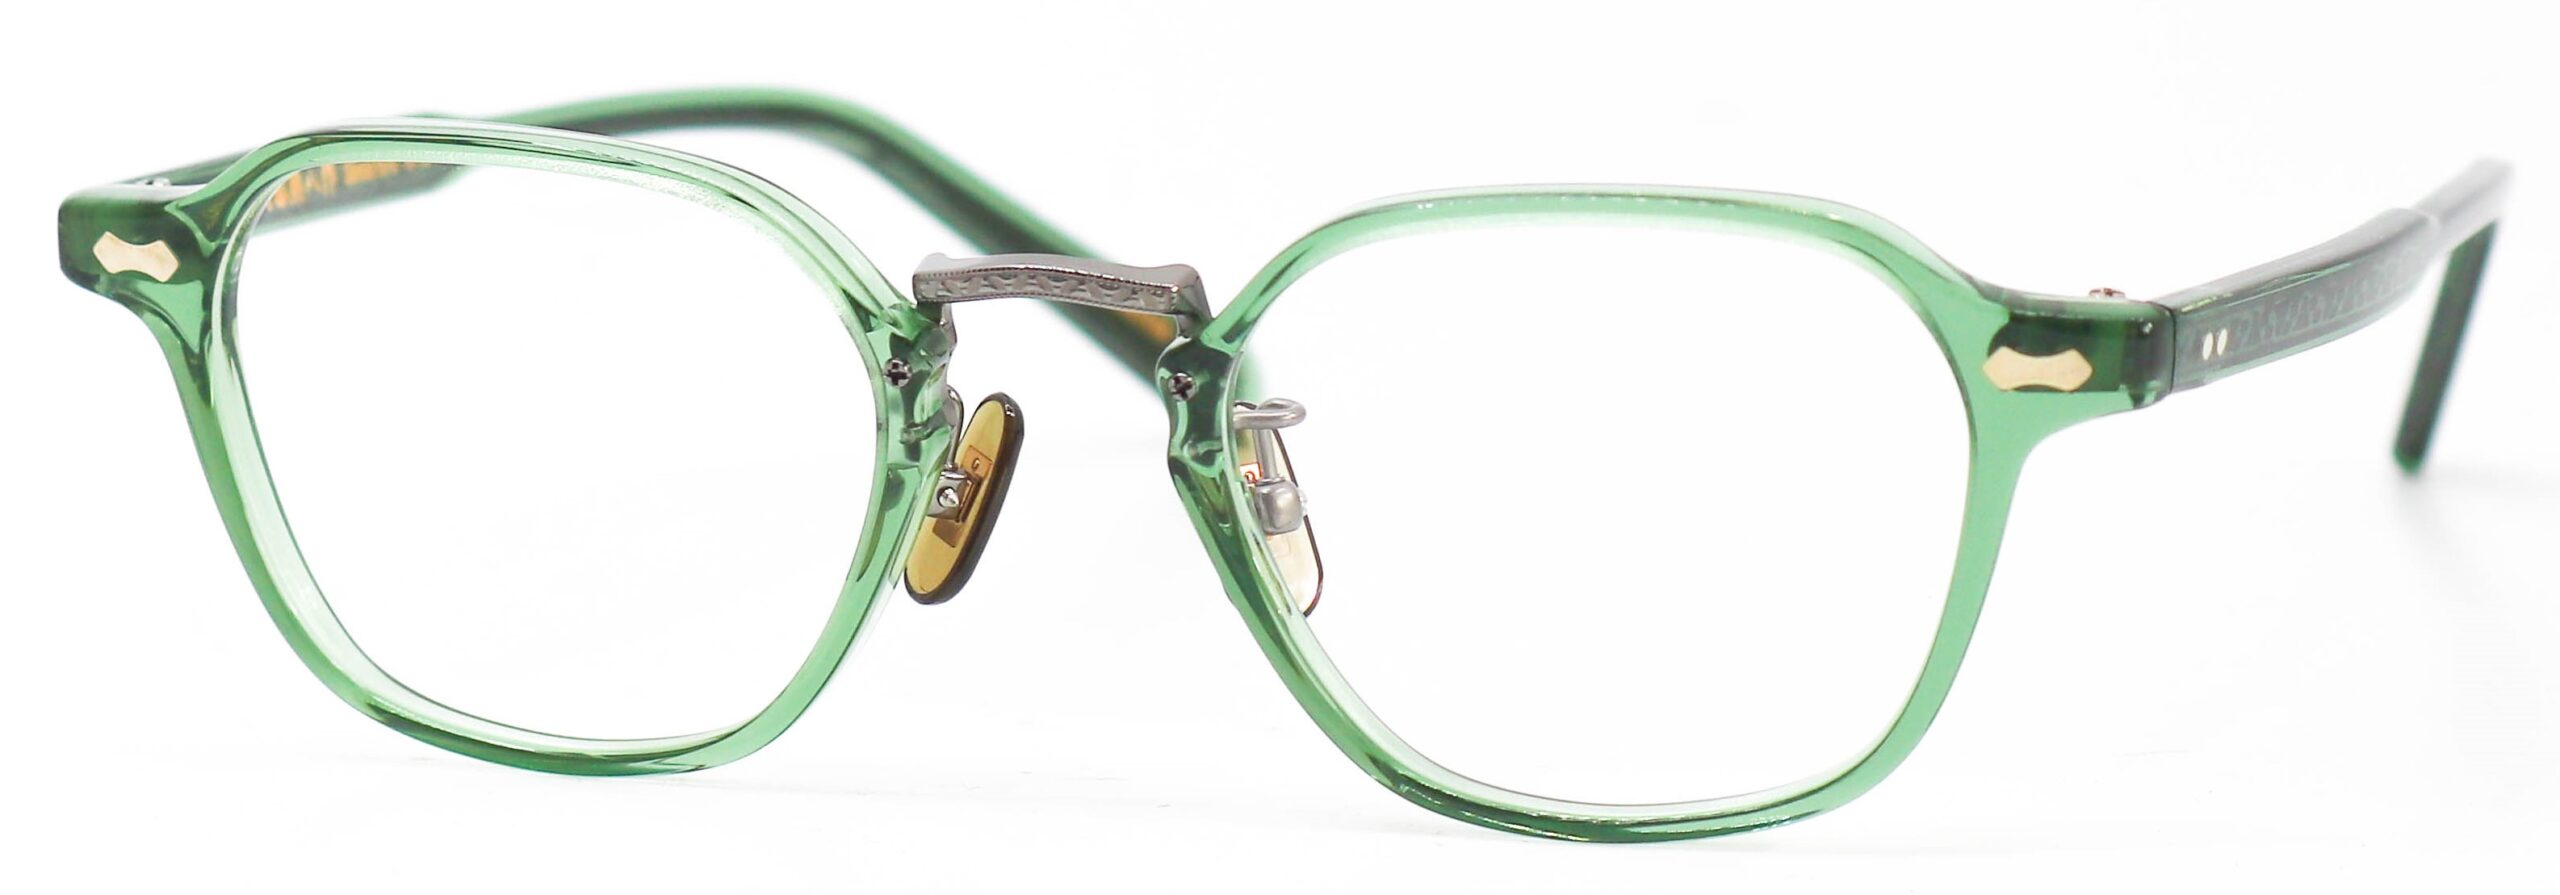 眼鏡のカラータイプC-4 Light-Green/Gray